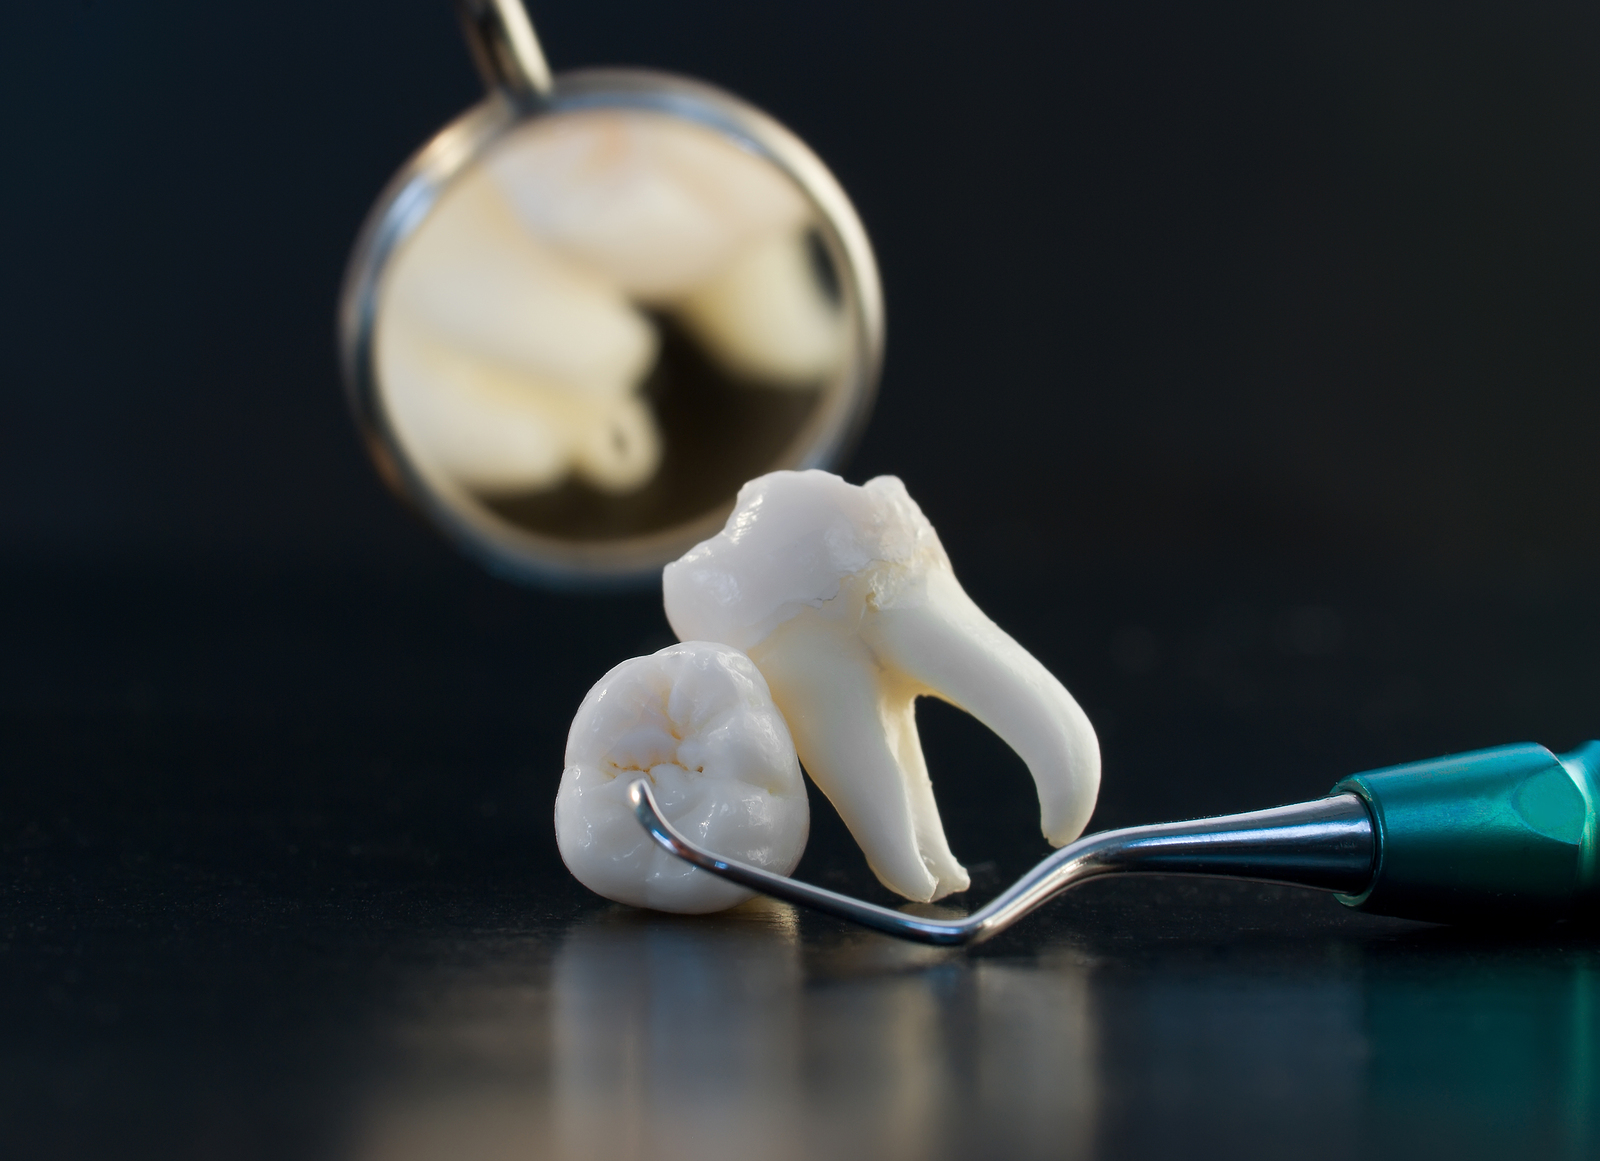 Когда назначают сложное удаление ретинированного или дистопированного зуба?